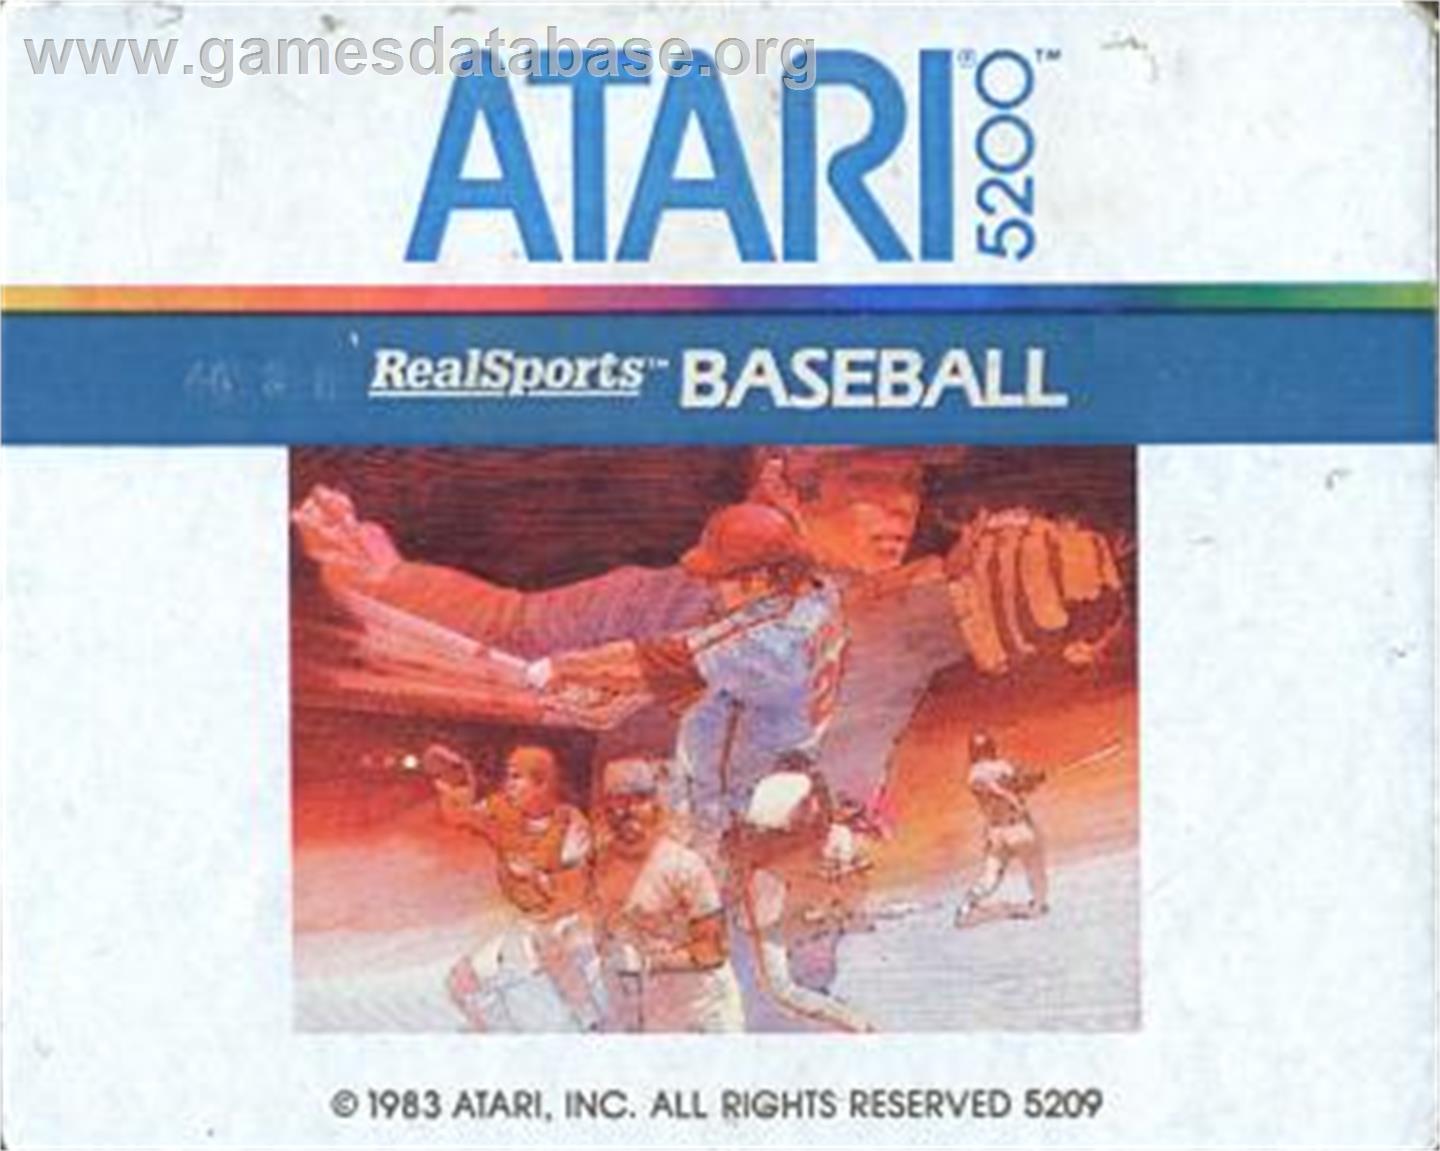 RealSports Baseball - Atari 5200 - Artwork - Cartridge Top